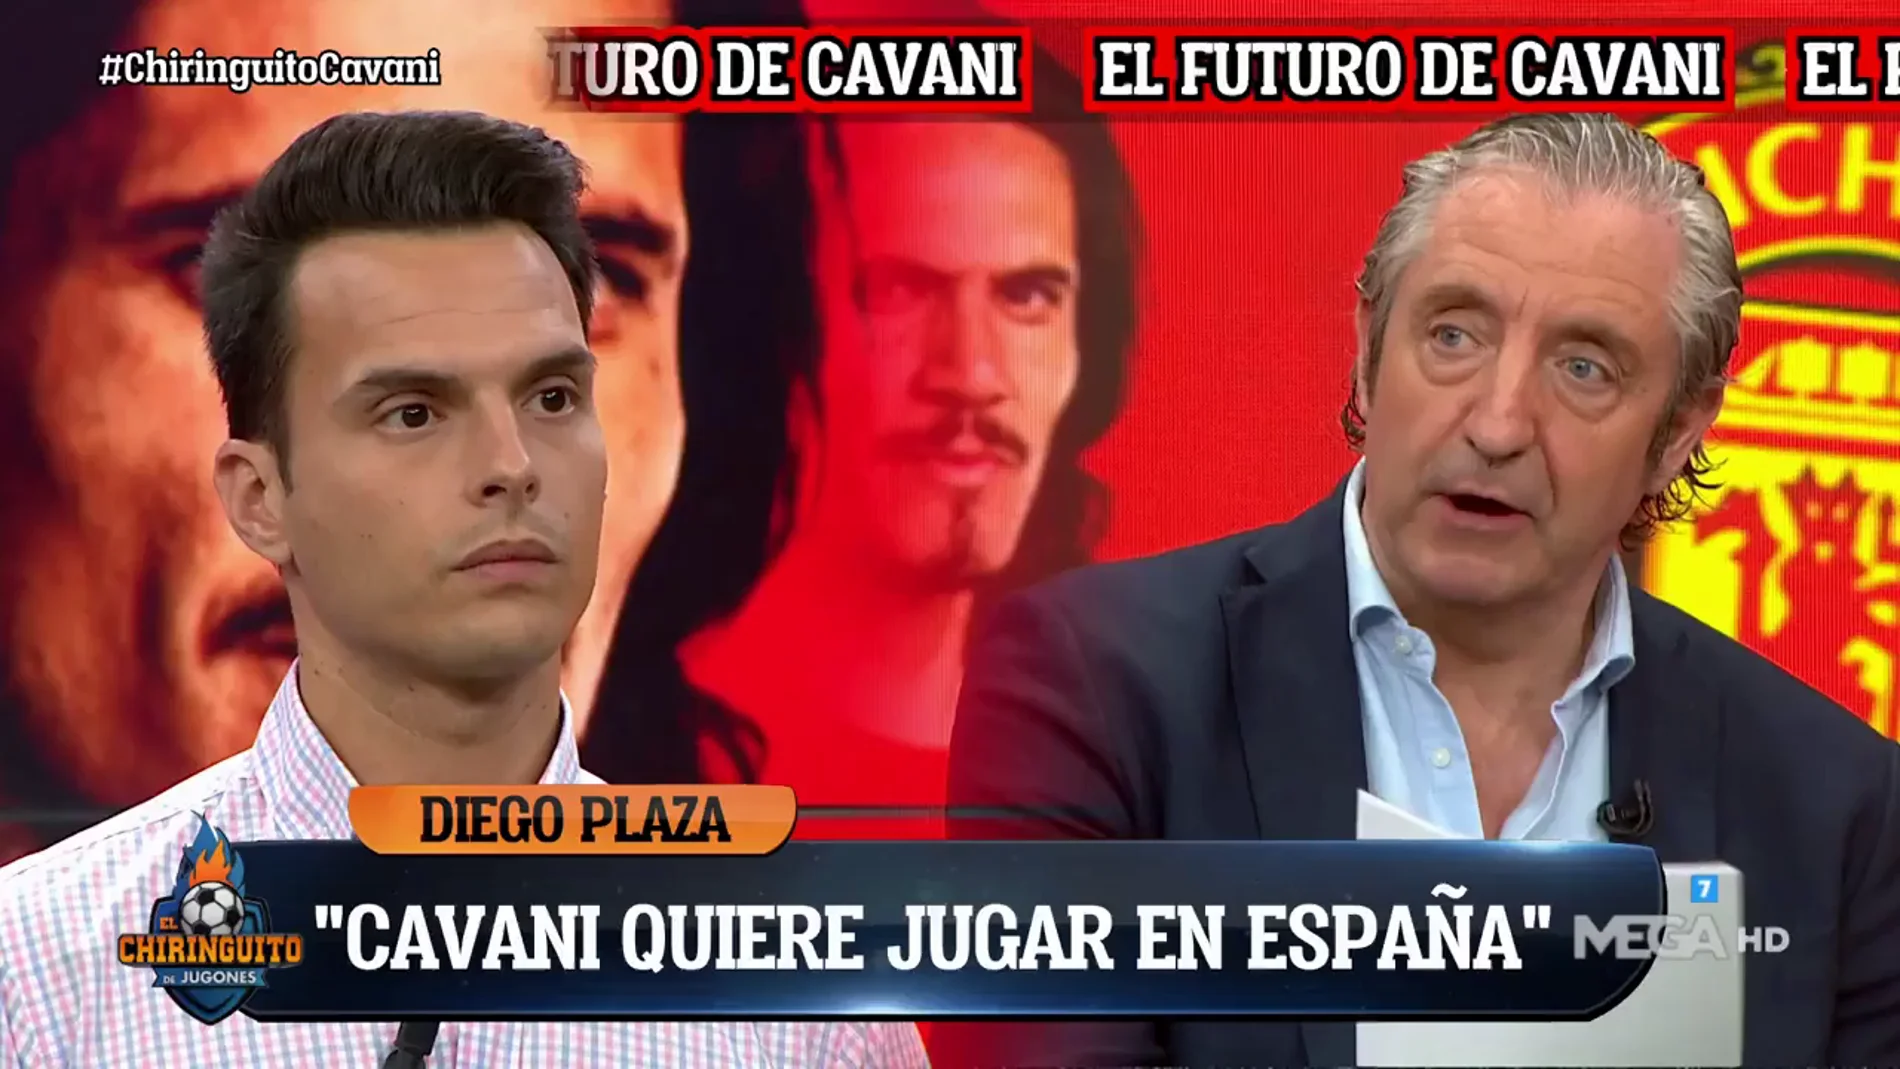 Cavani quiere jugar en España